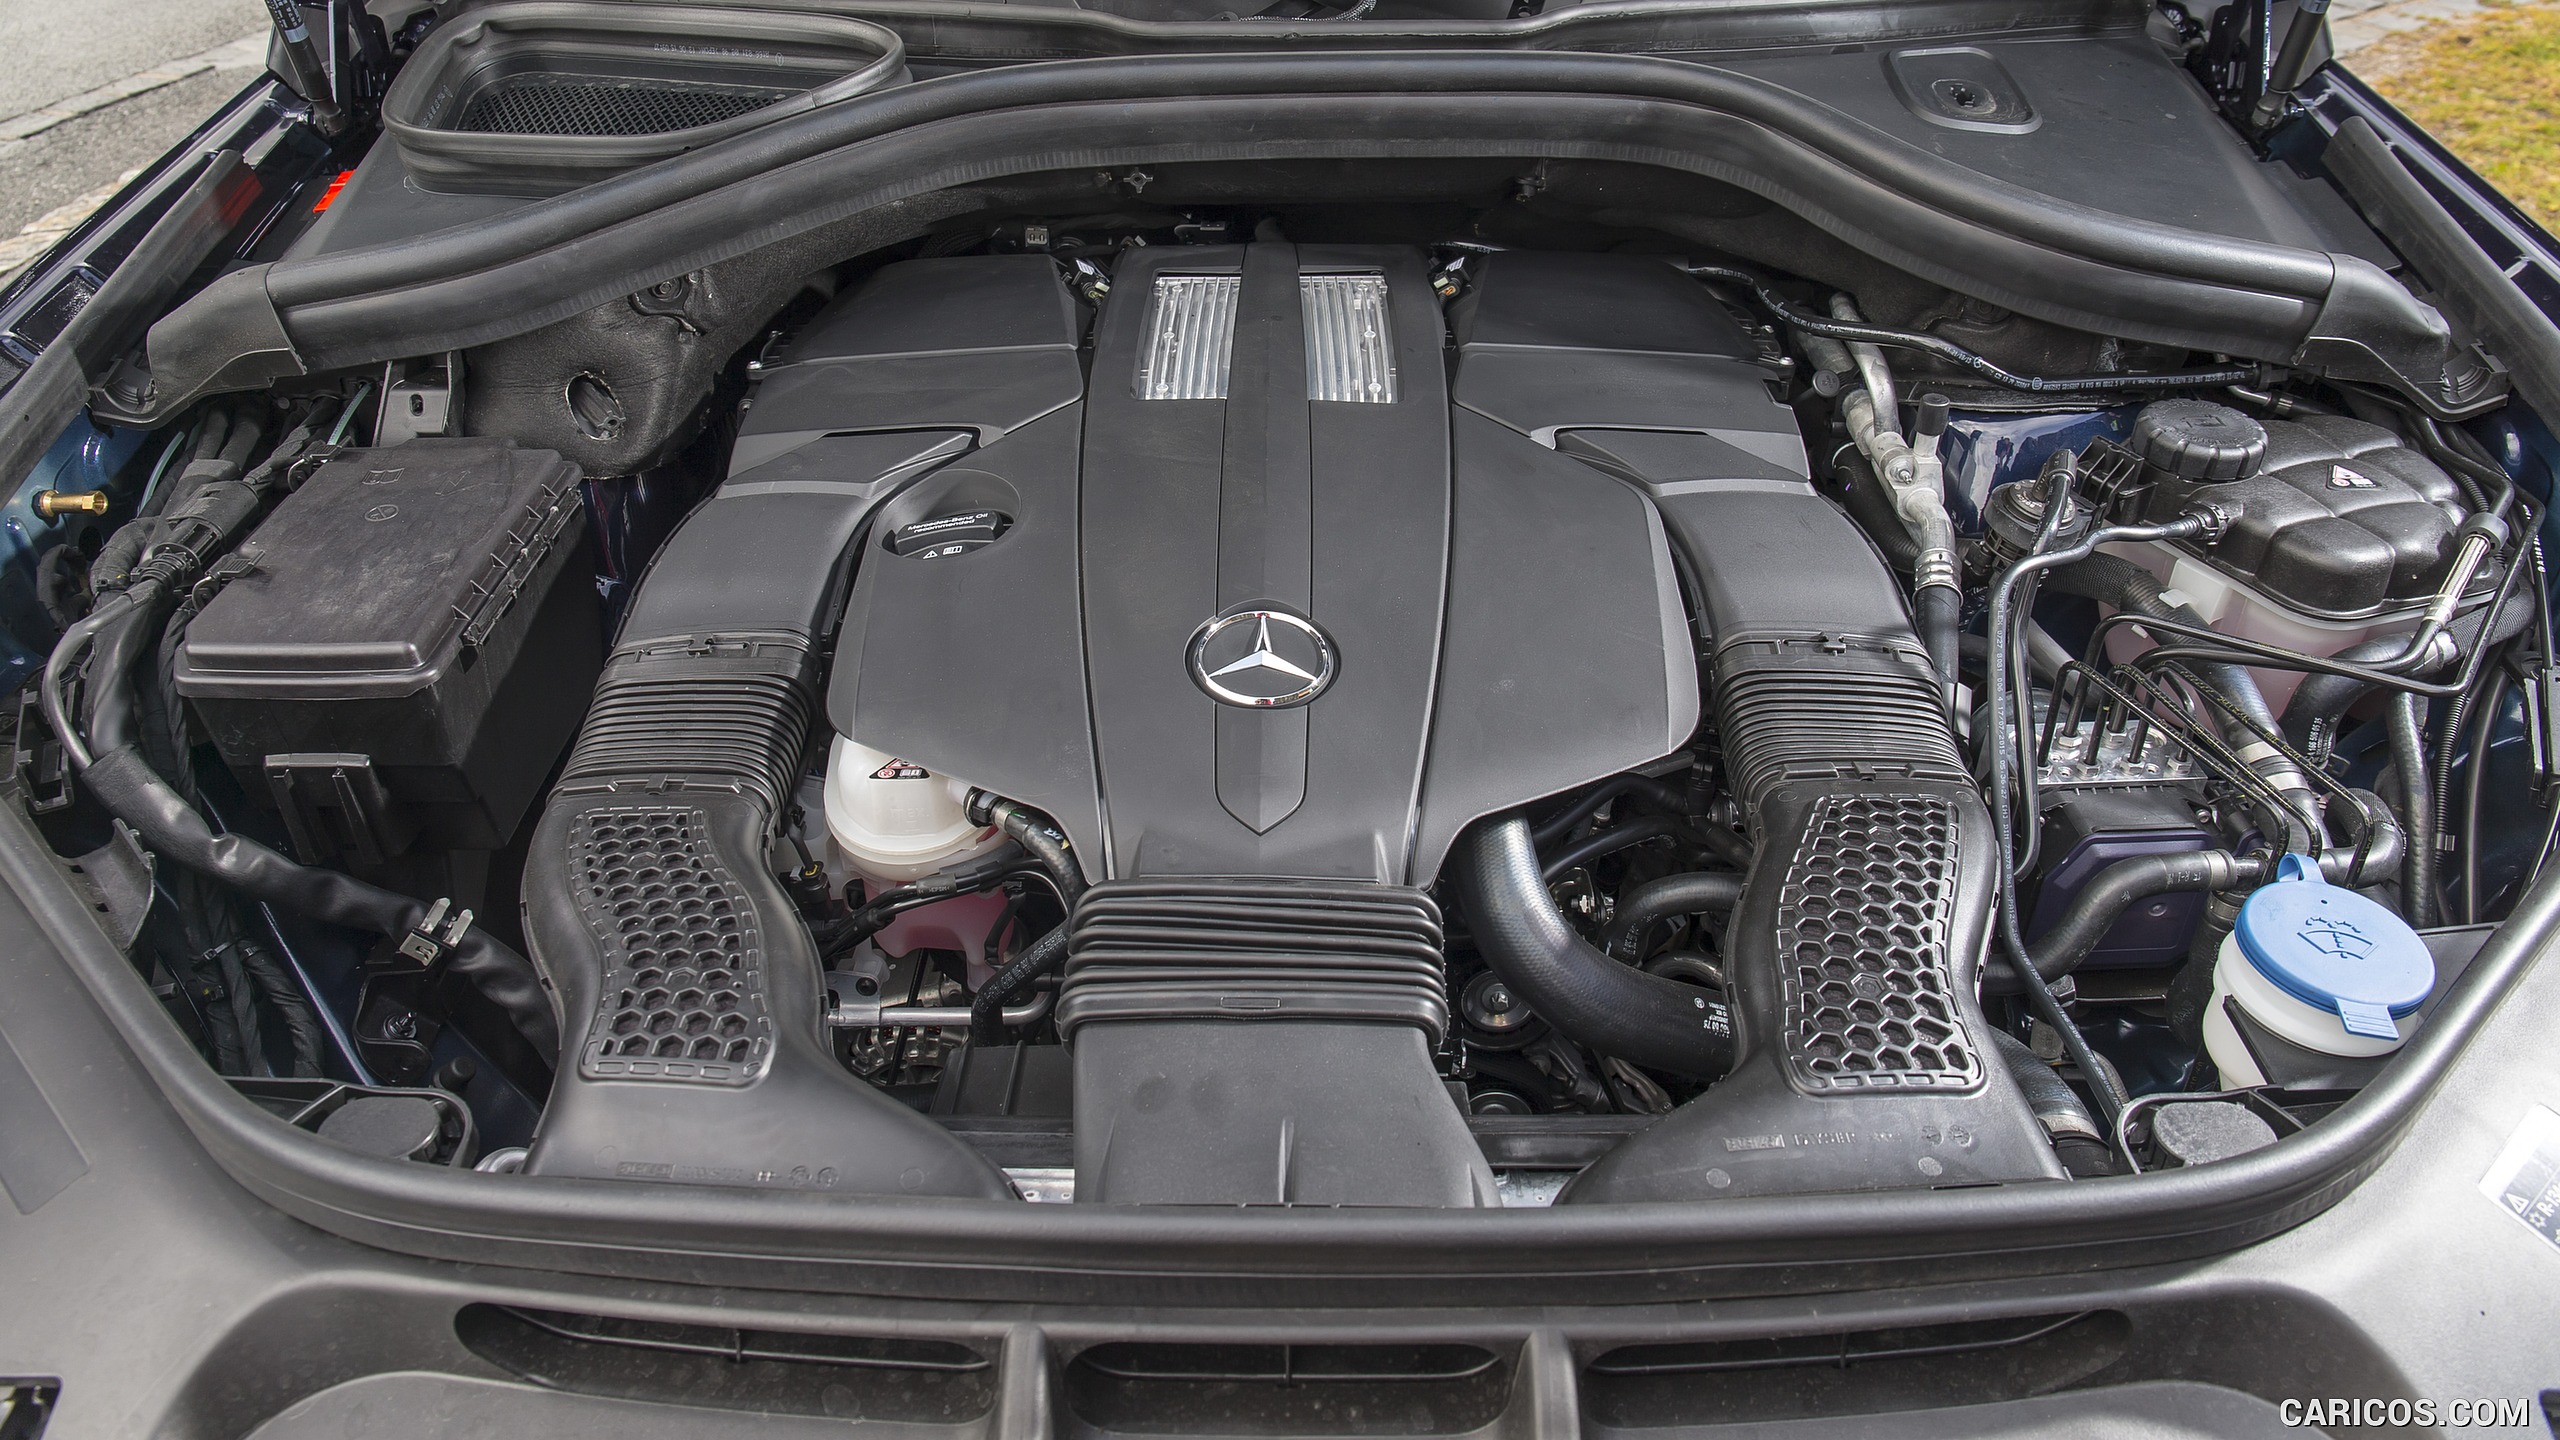 Двигатель мерседес glc. Mercedes GLS 2017 мотор. Мерседес ГЛС 350 двигатель. Mercedes GLS 400d аккумулятор. Mercedes-Benz gls400 d 4matic двигатель.